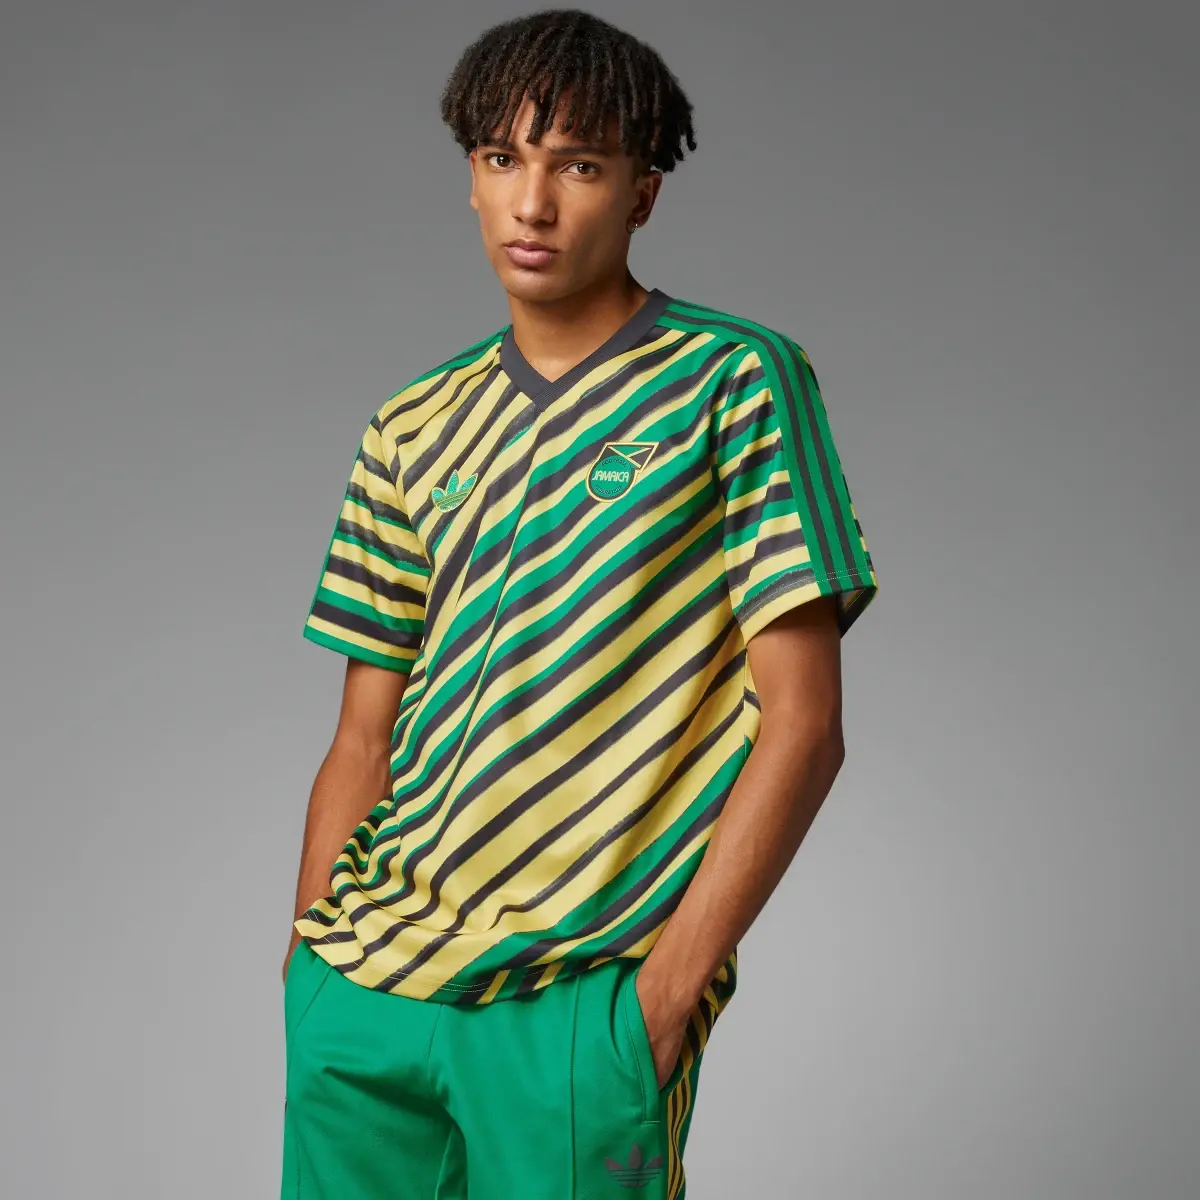 Adidas Camiseta Trefoil Jamaica. 1